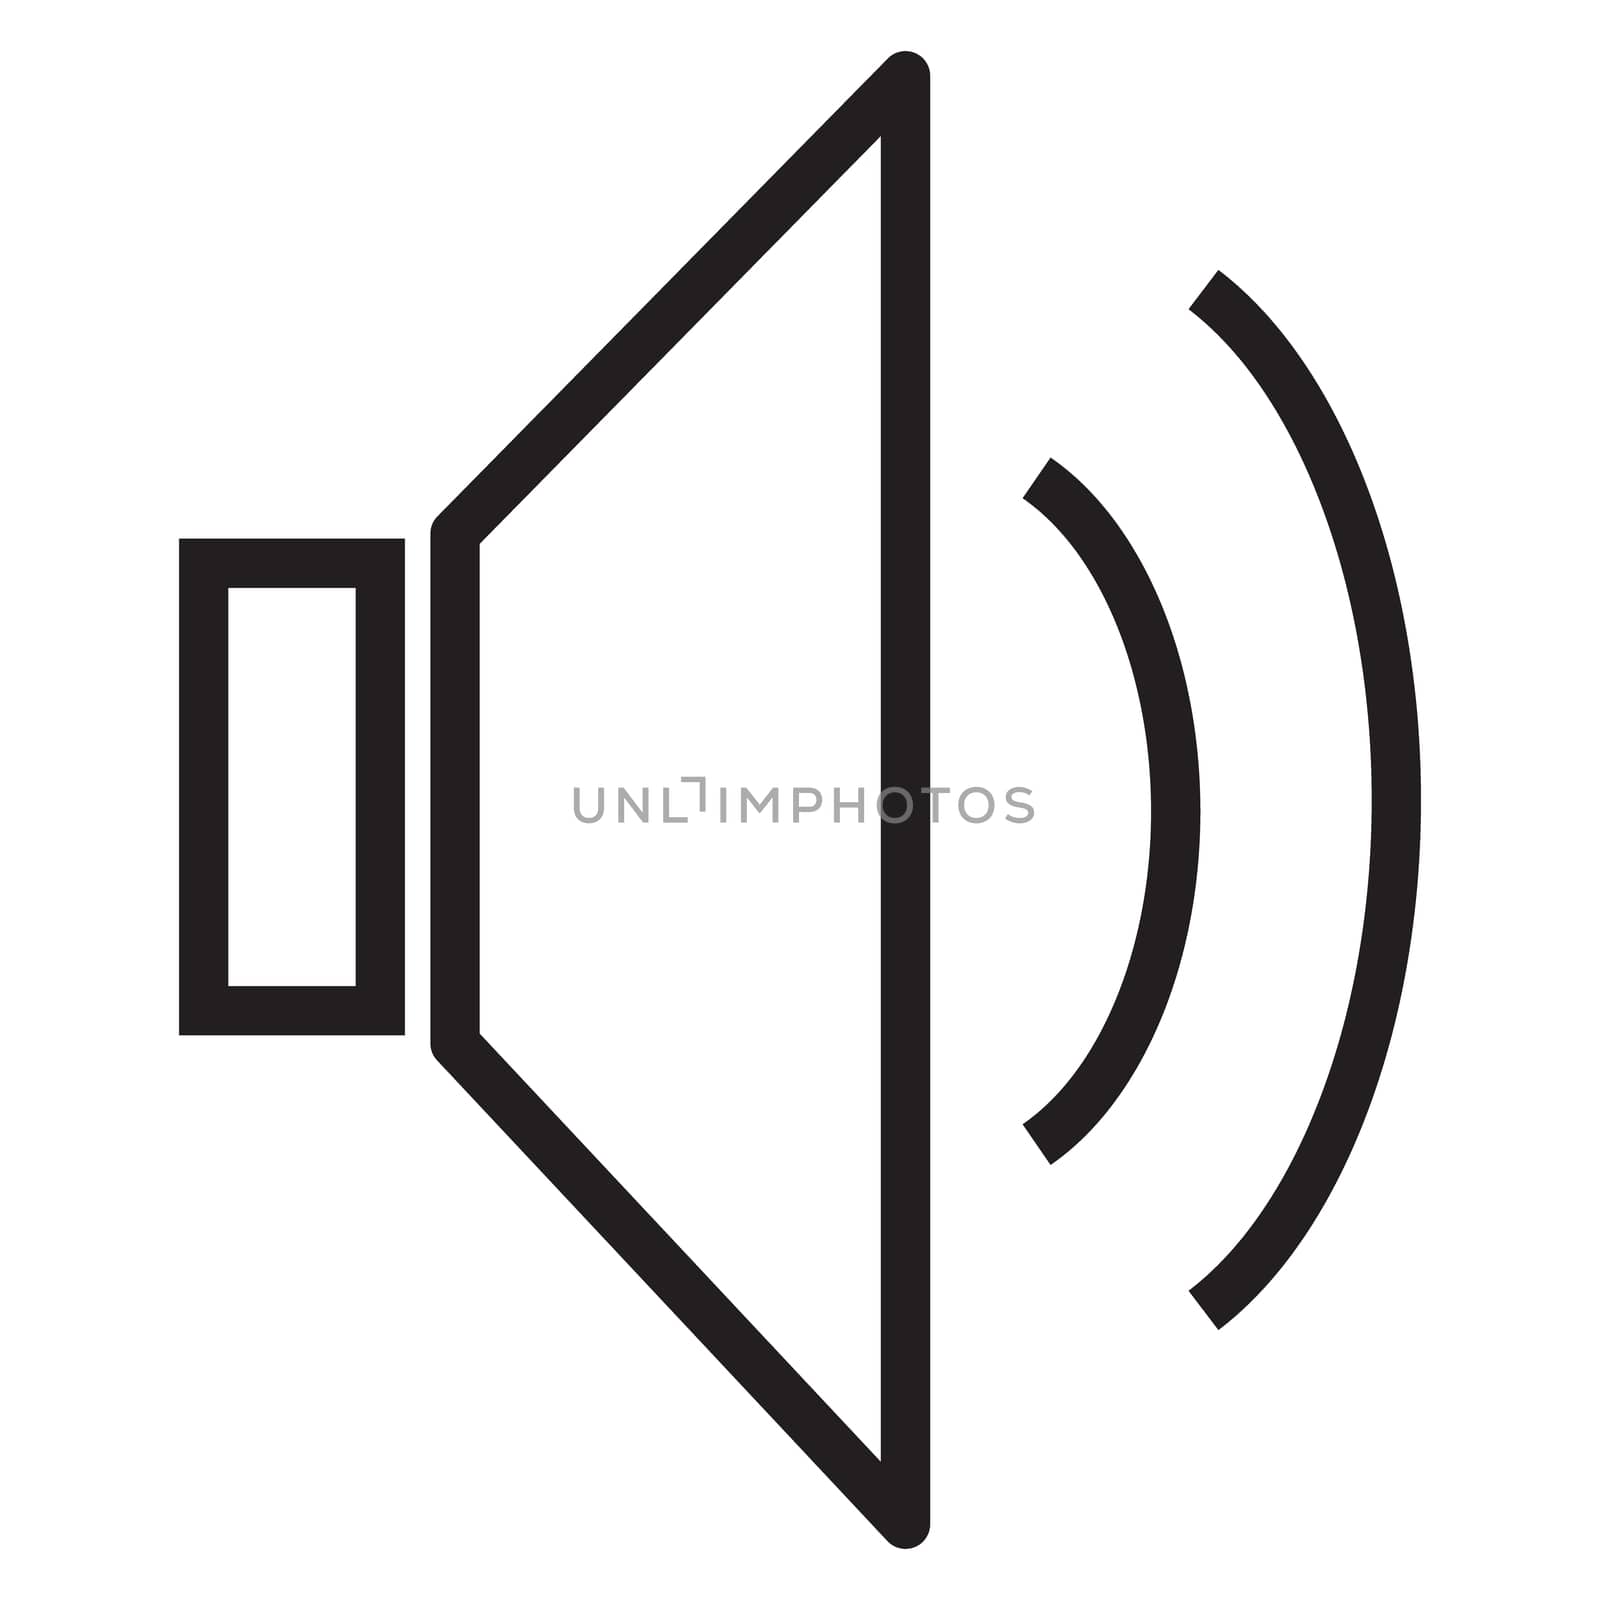 speaker icon, volume icon, speaker icon on white background, lou by suthee